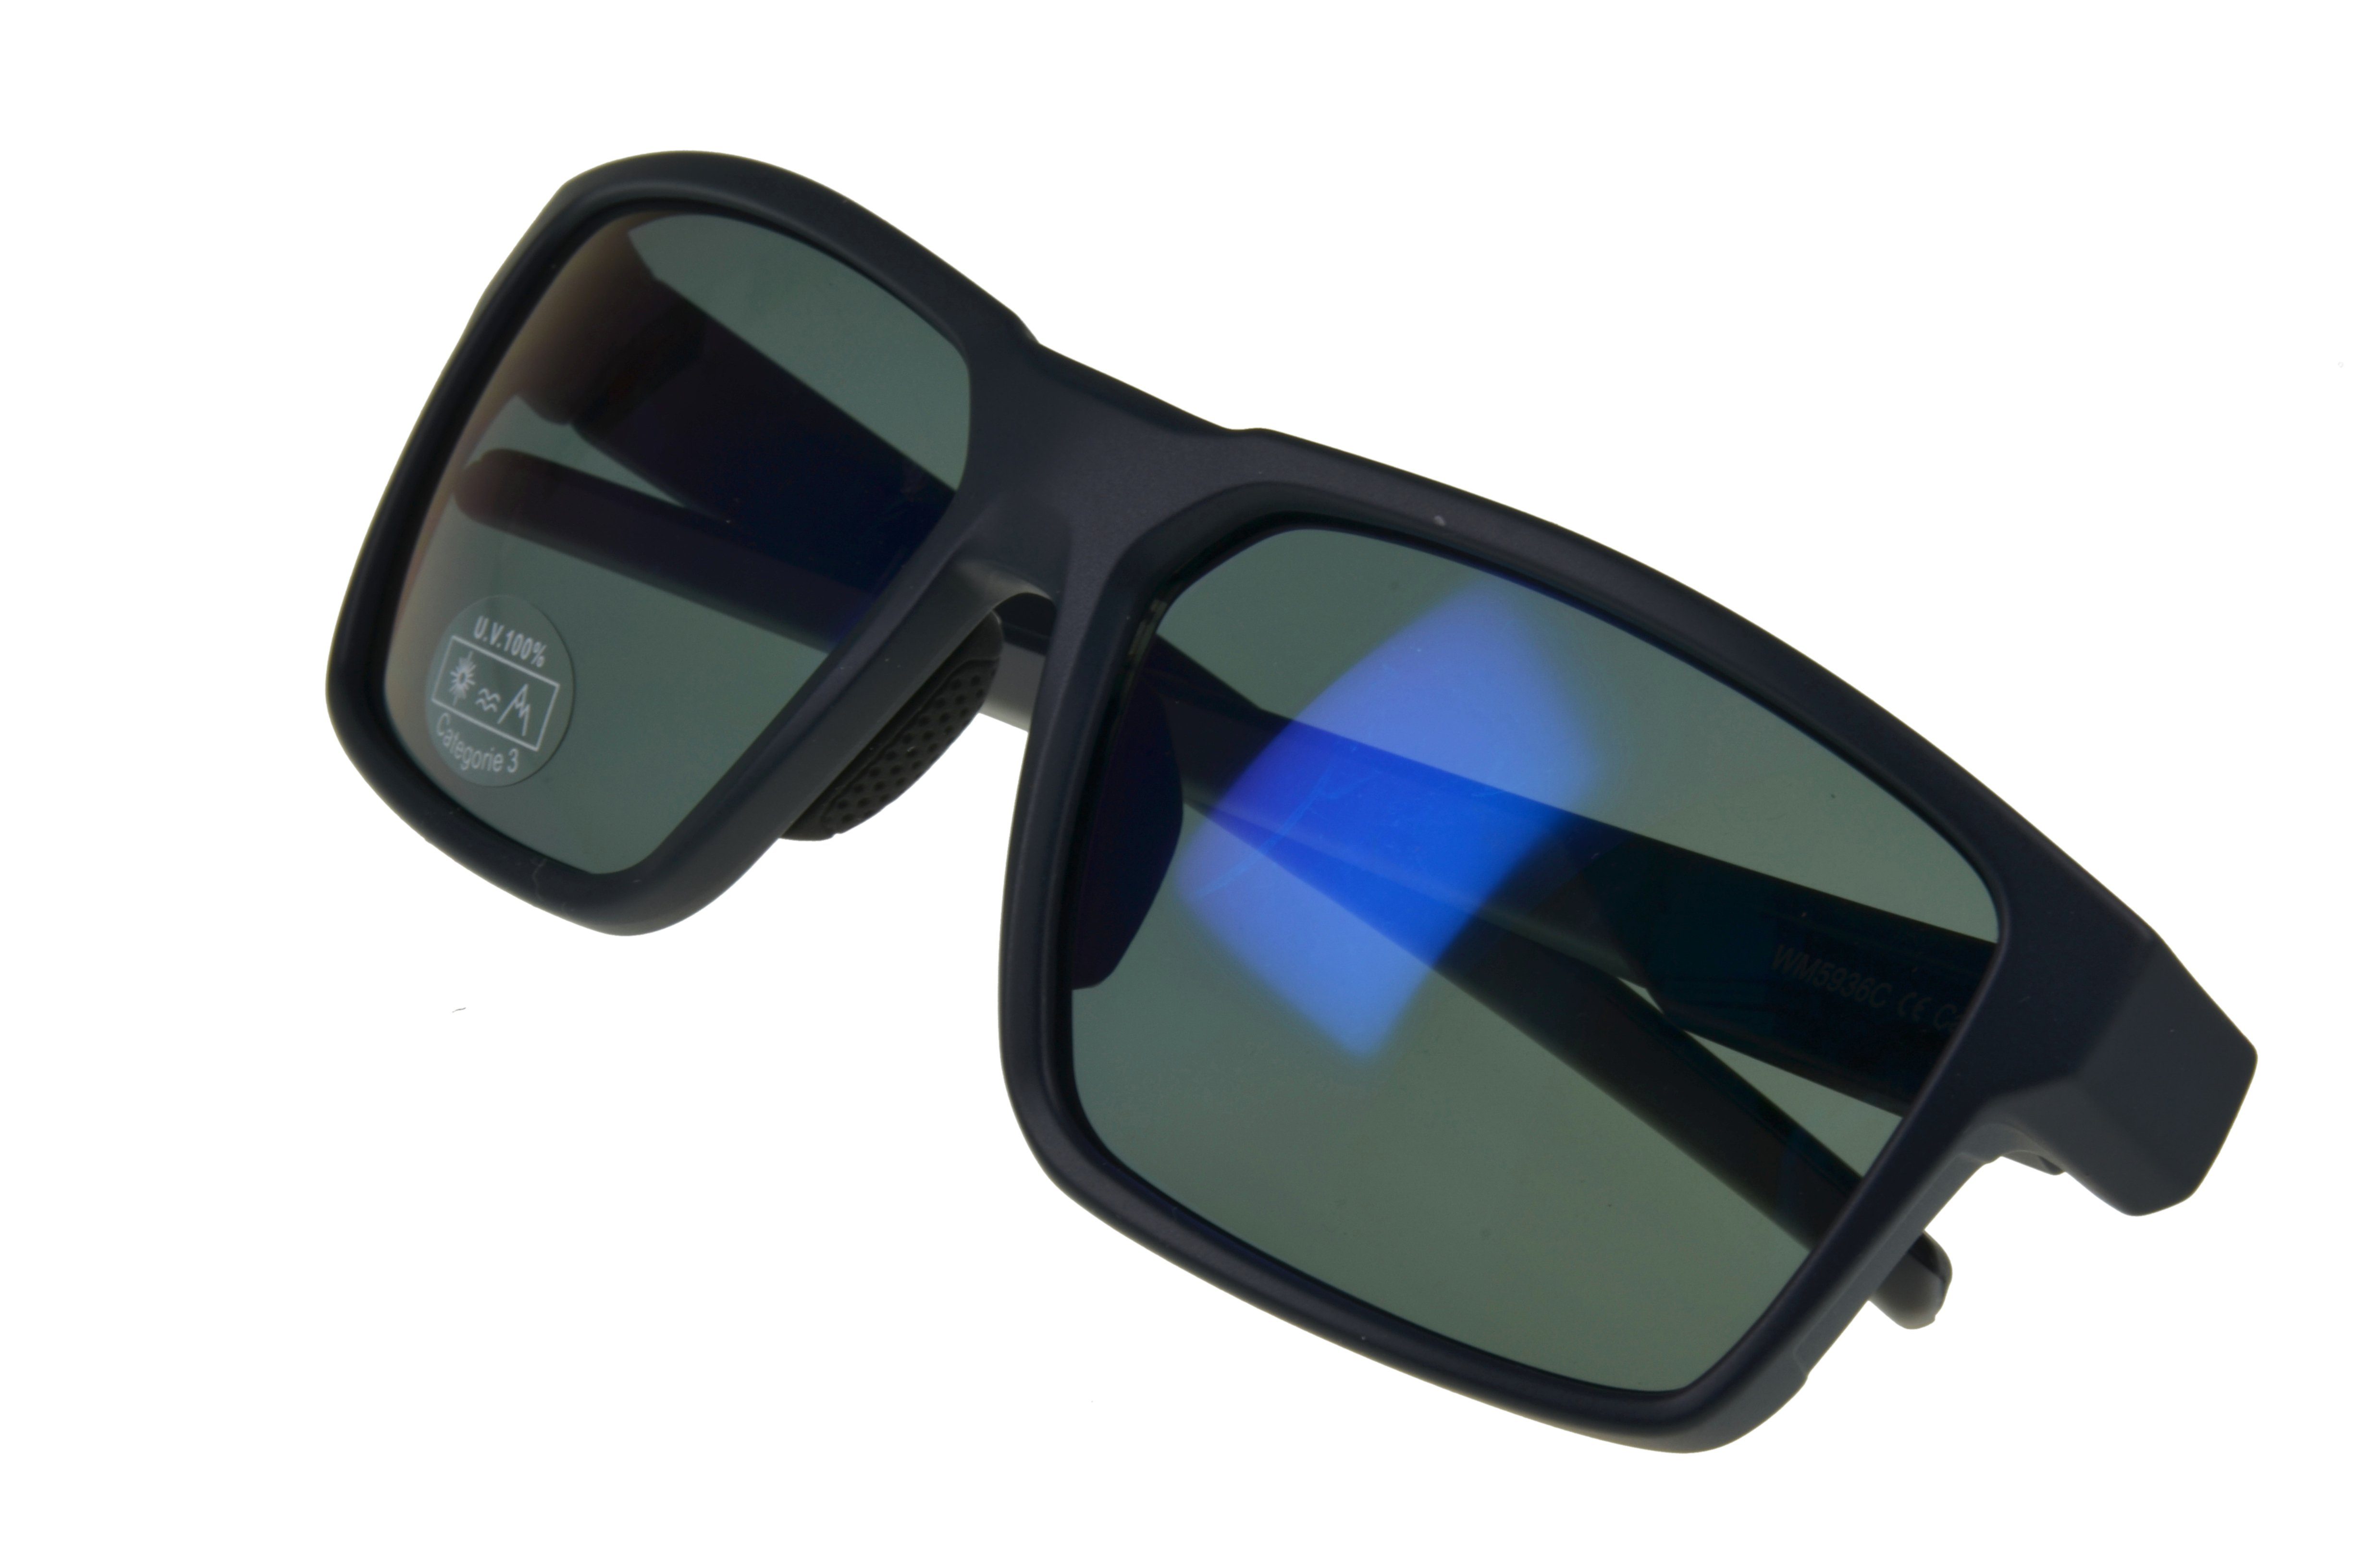 schwarz, Herren grau, braun schwarz_blau Damen Gamswild getönte Fahrradbrille Gläser Unisex Sportbrille WS5936 Sonnenbrille Skibrille